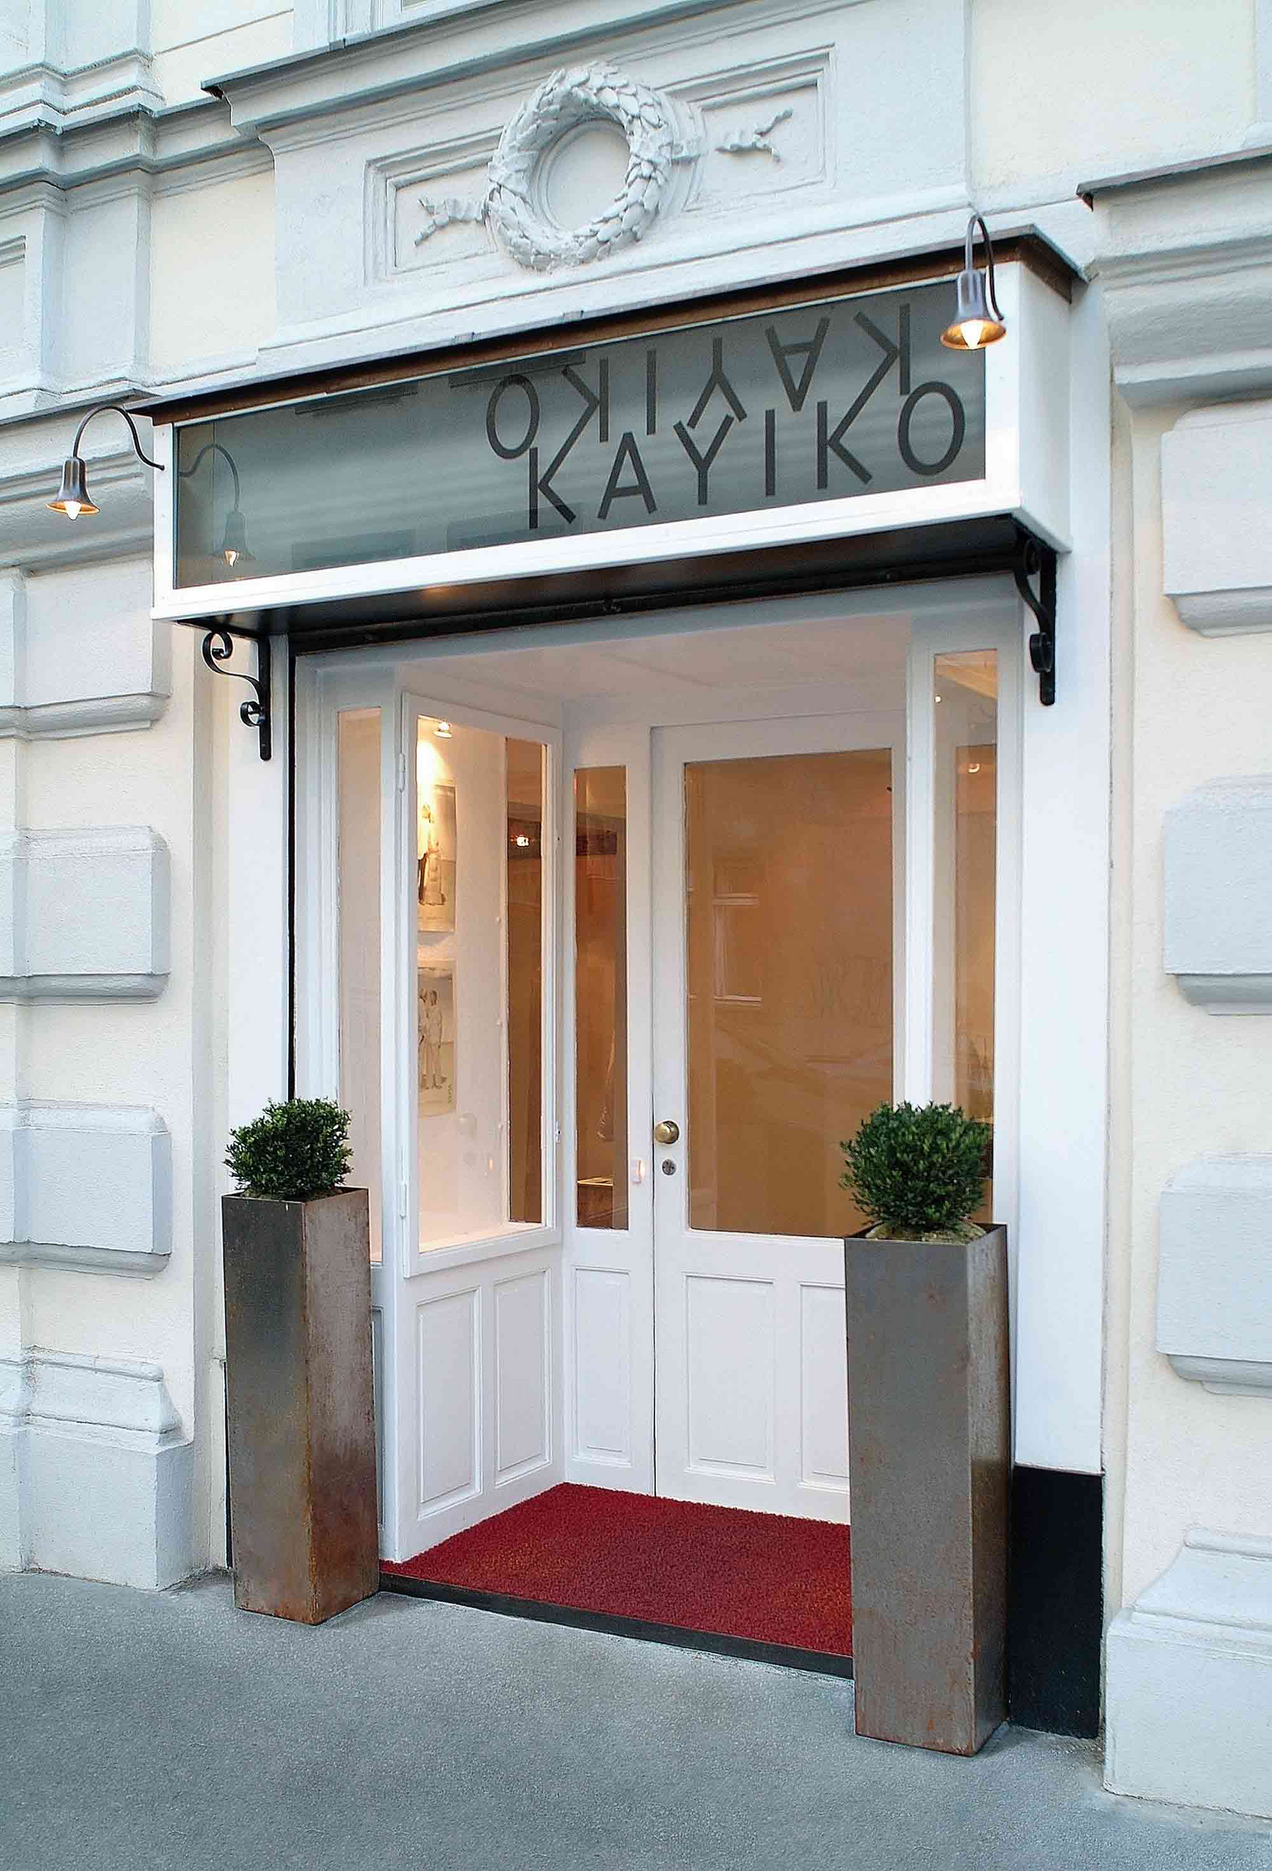 Weiße Fassade des Fashion Stores Kayiko Wien, über dem Türsturz sieht man das Schild KAYIKO